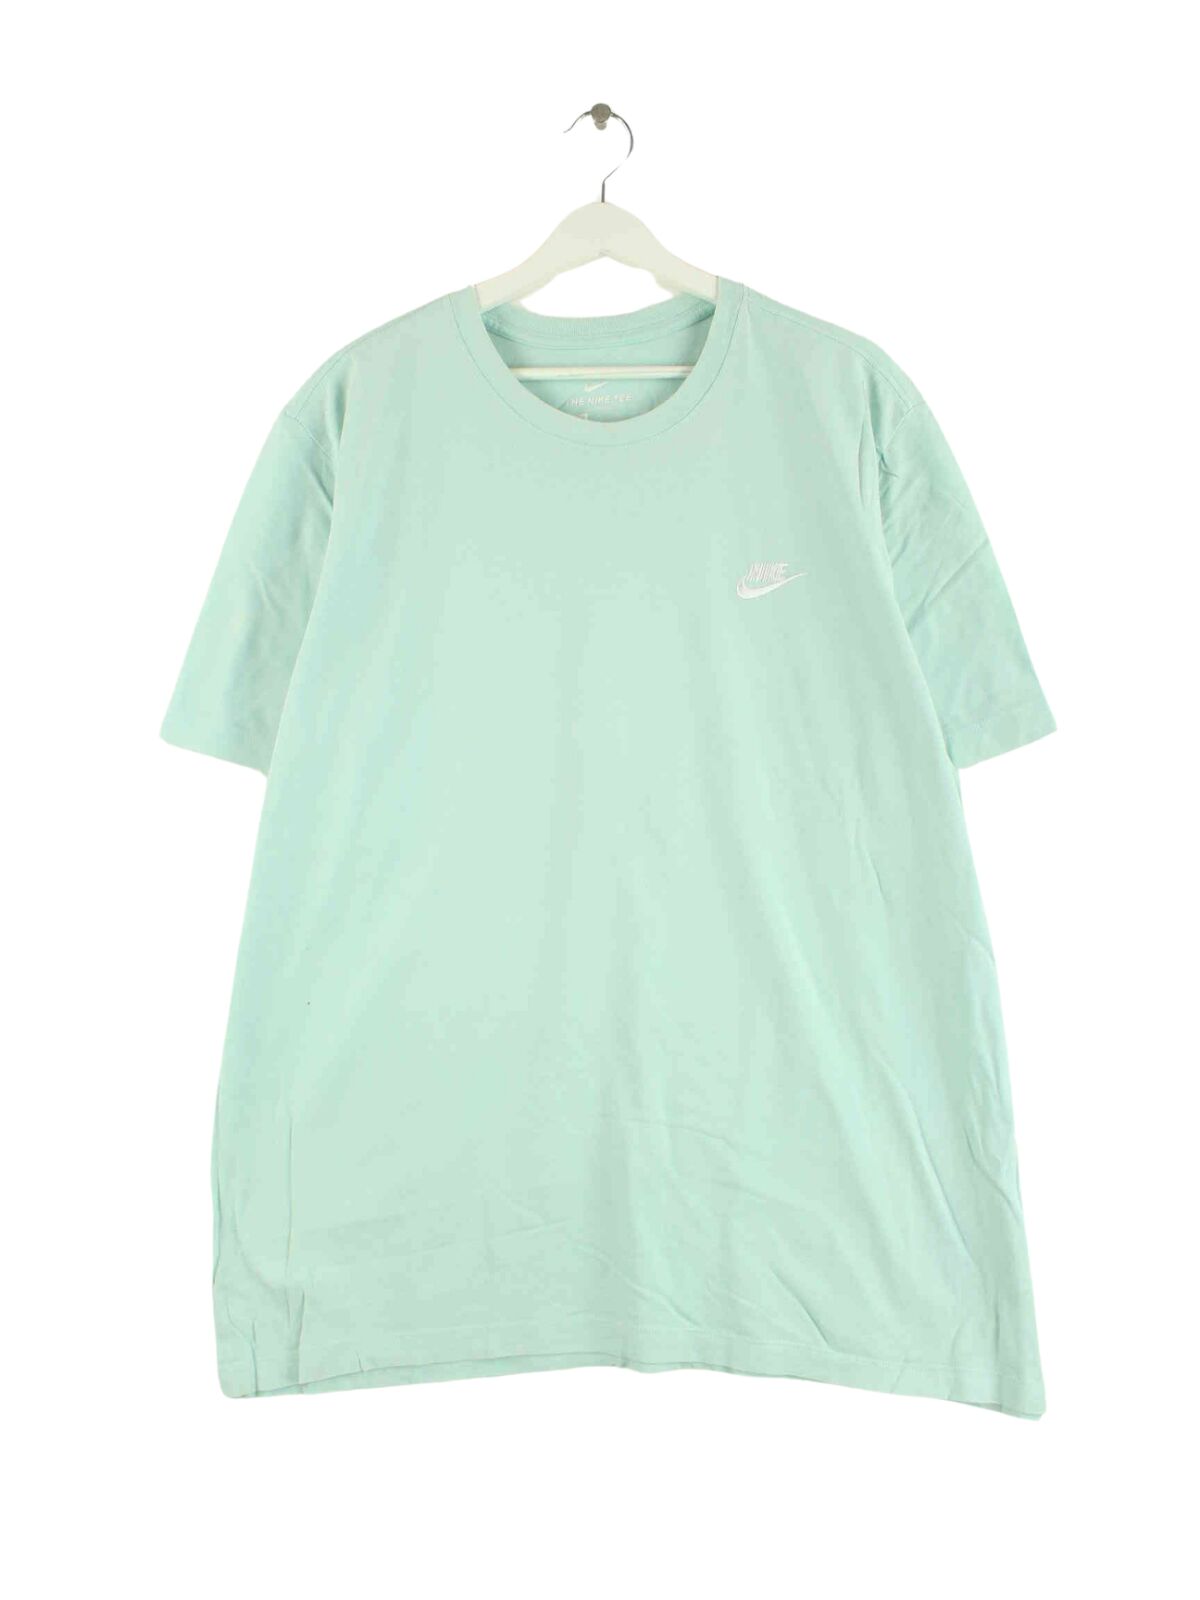 Nike Basic T-Shirt Türkis XL (front image)